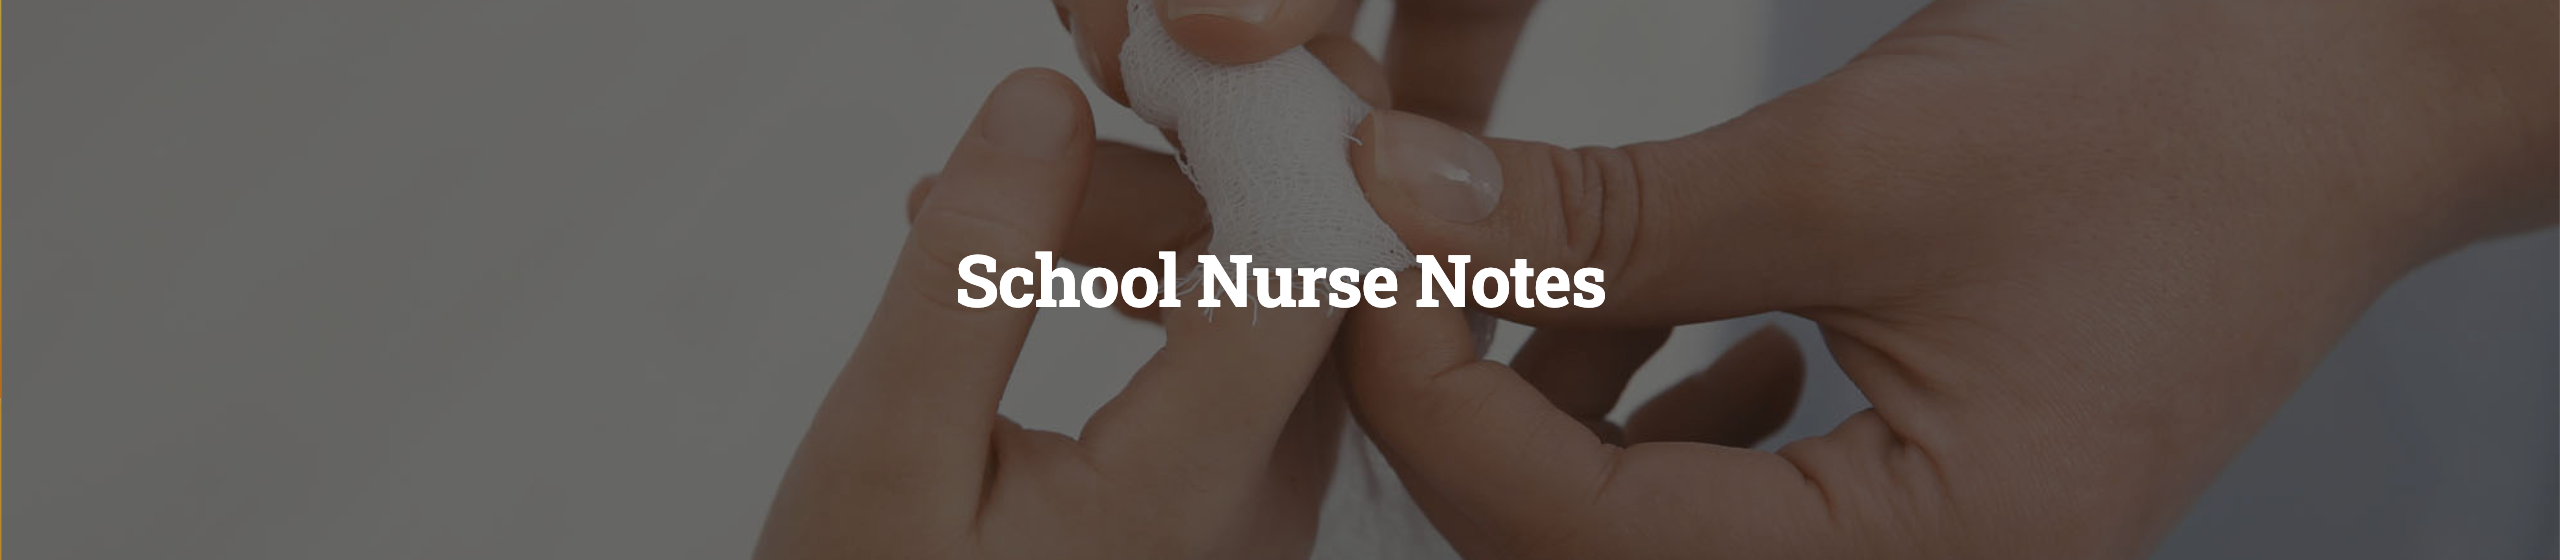 School Nurse Notes